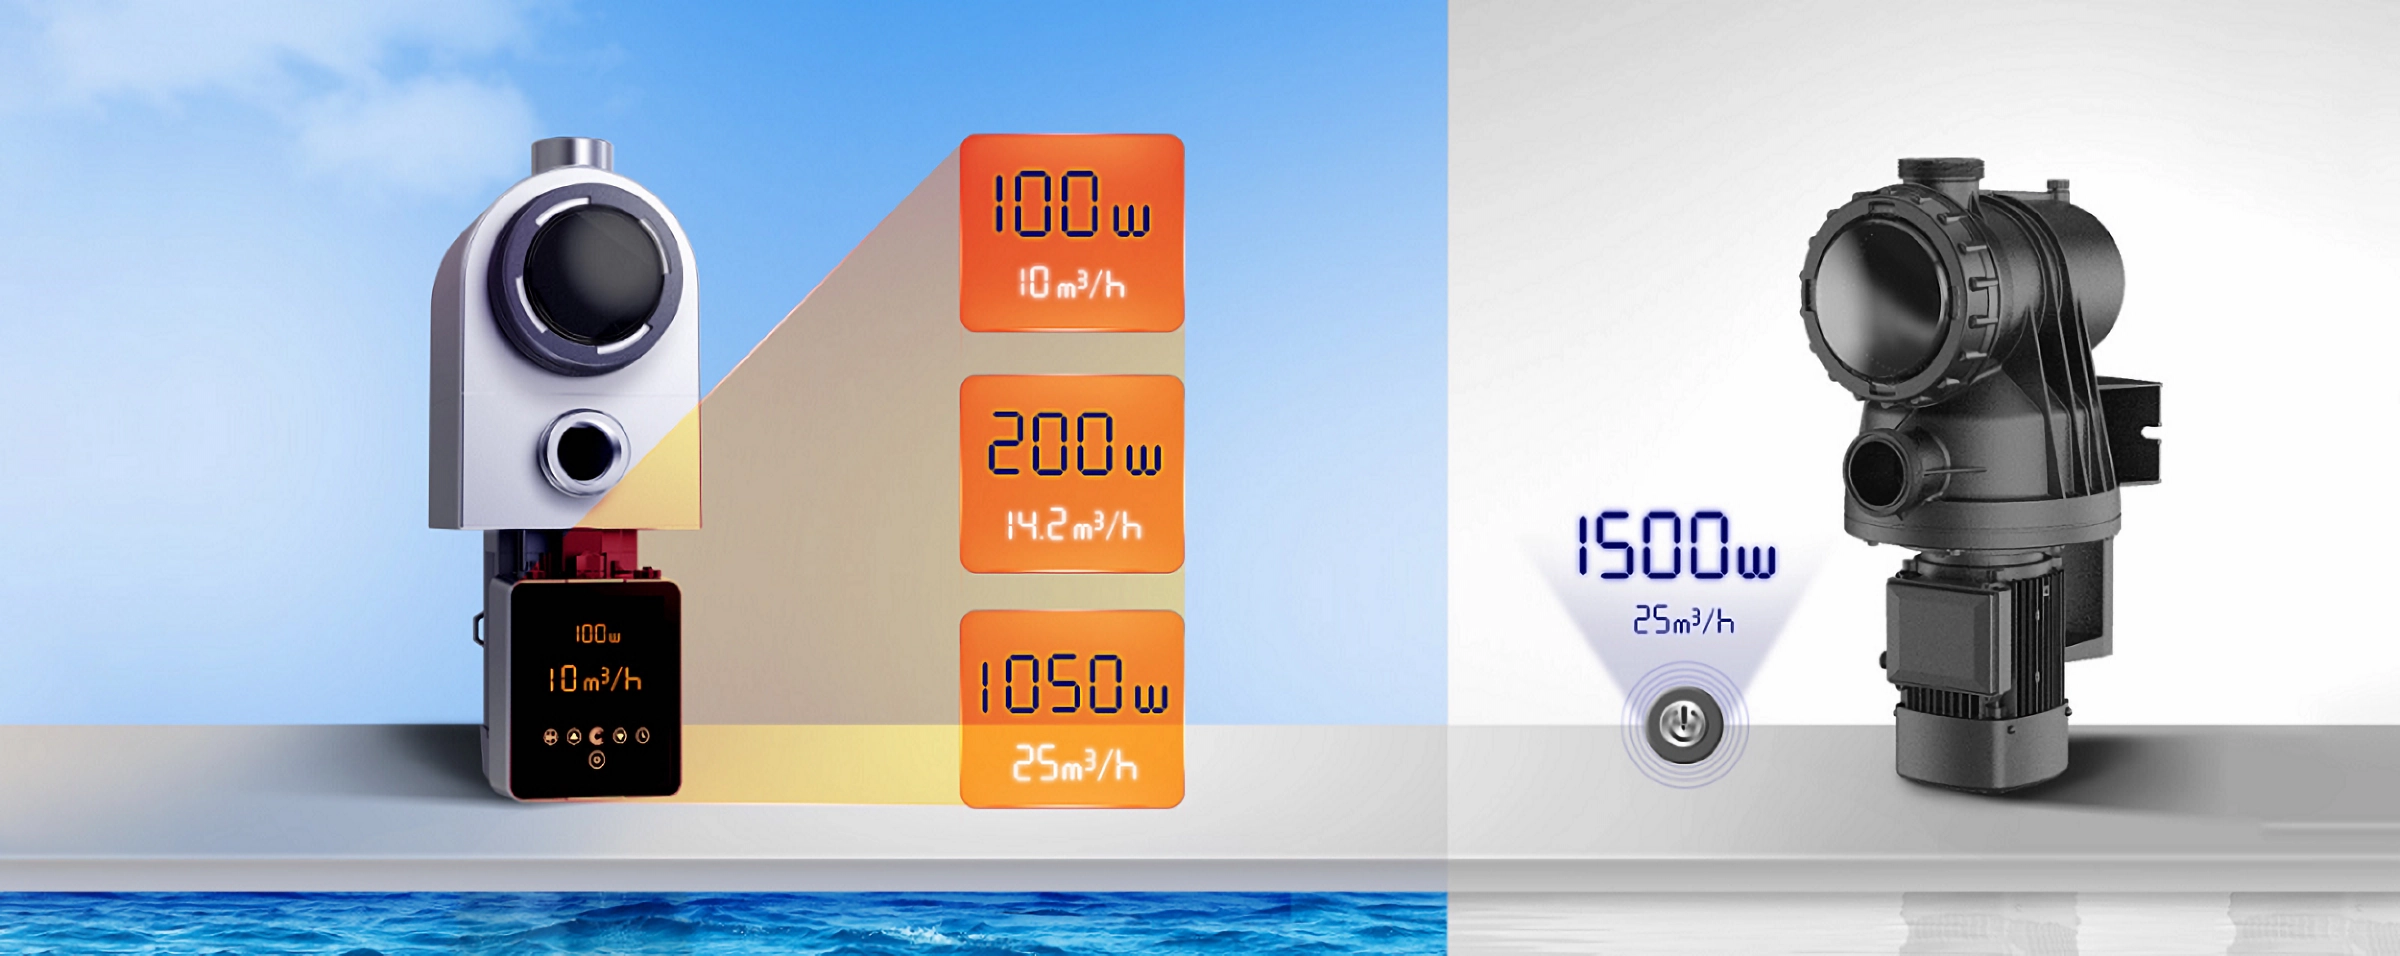 InverPro - Pompa per piscina Full Inverter per nuoto con acqua cristallina 15X a risparmio energetico 24 ore su 24, 7 giorni su 7